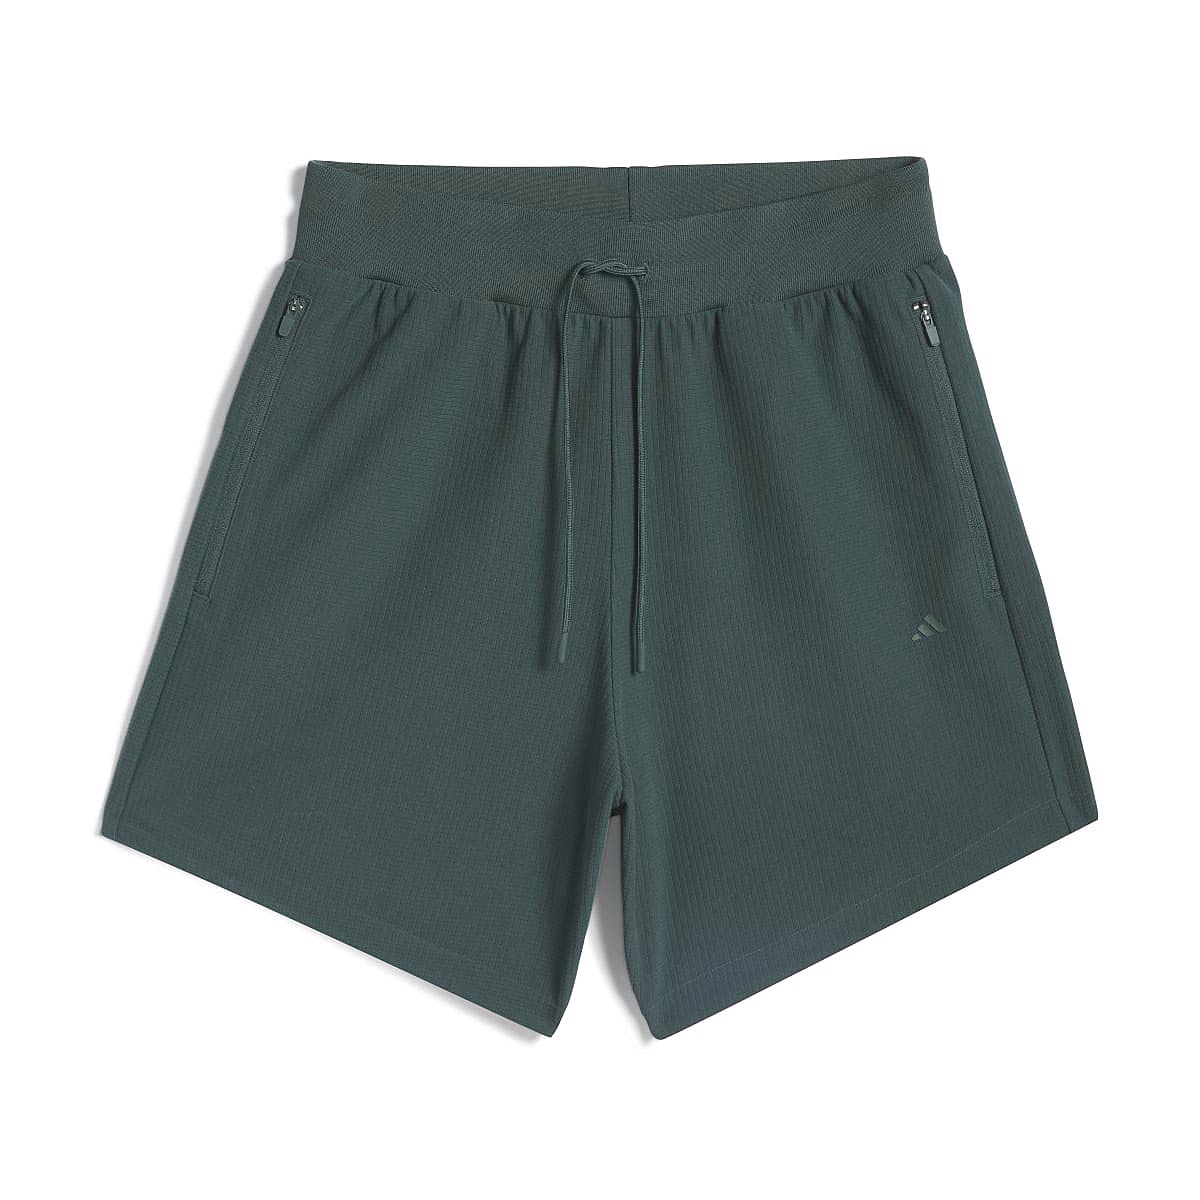 Image of Adidas Basketball Brushed Shorts, Green